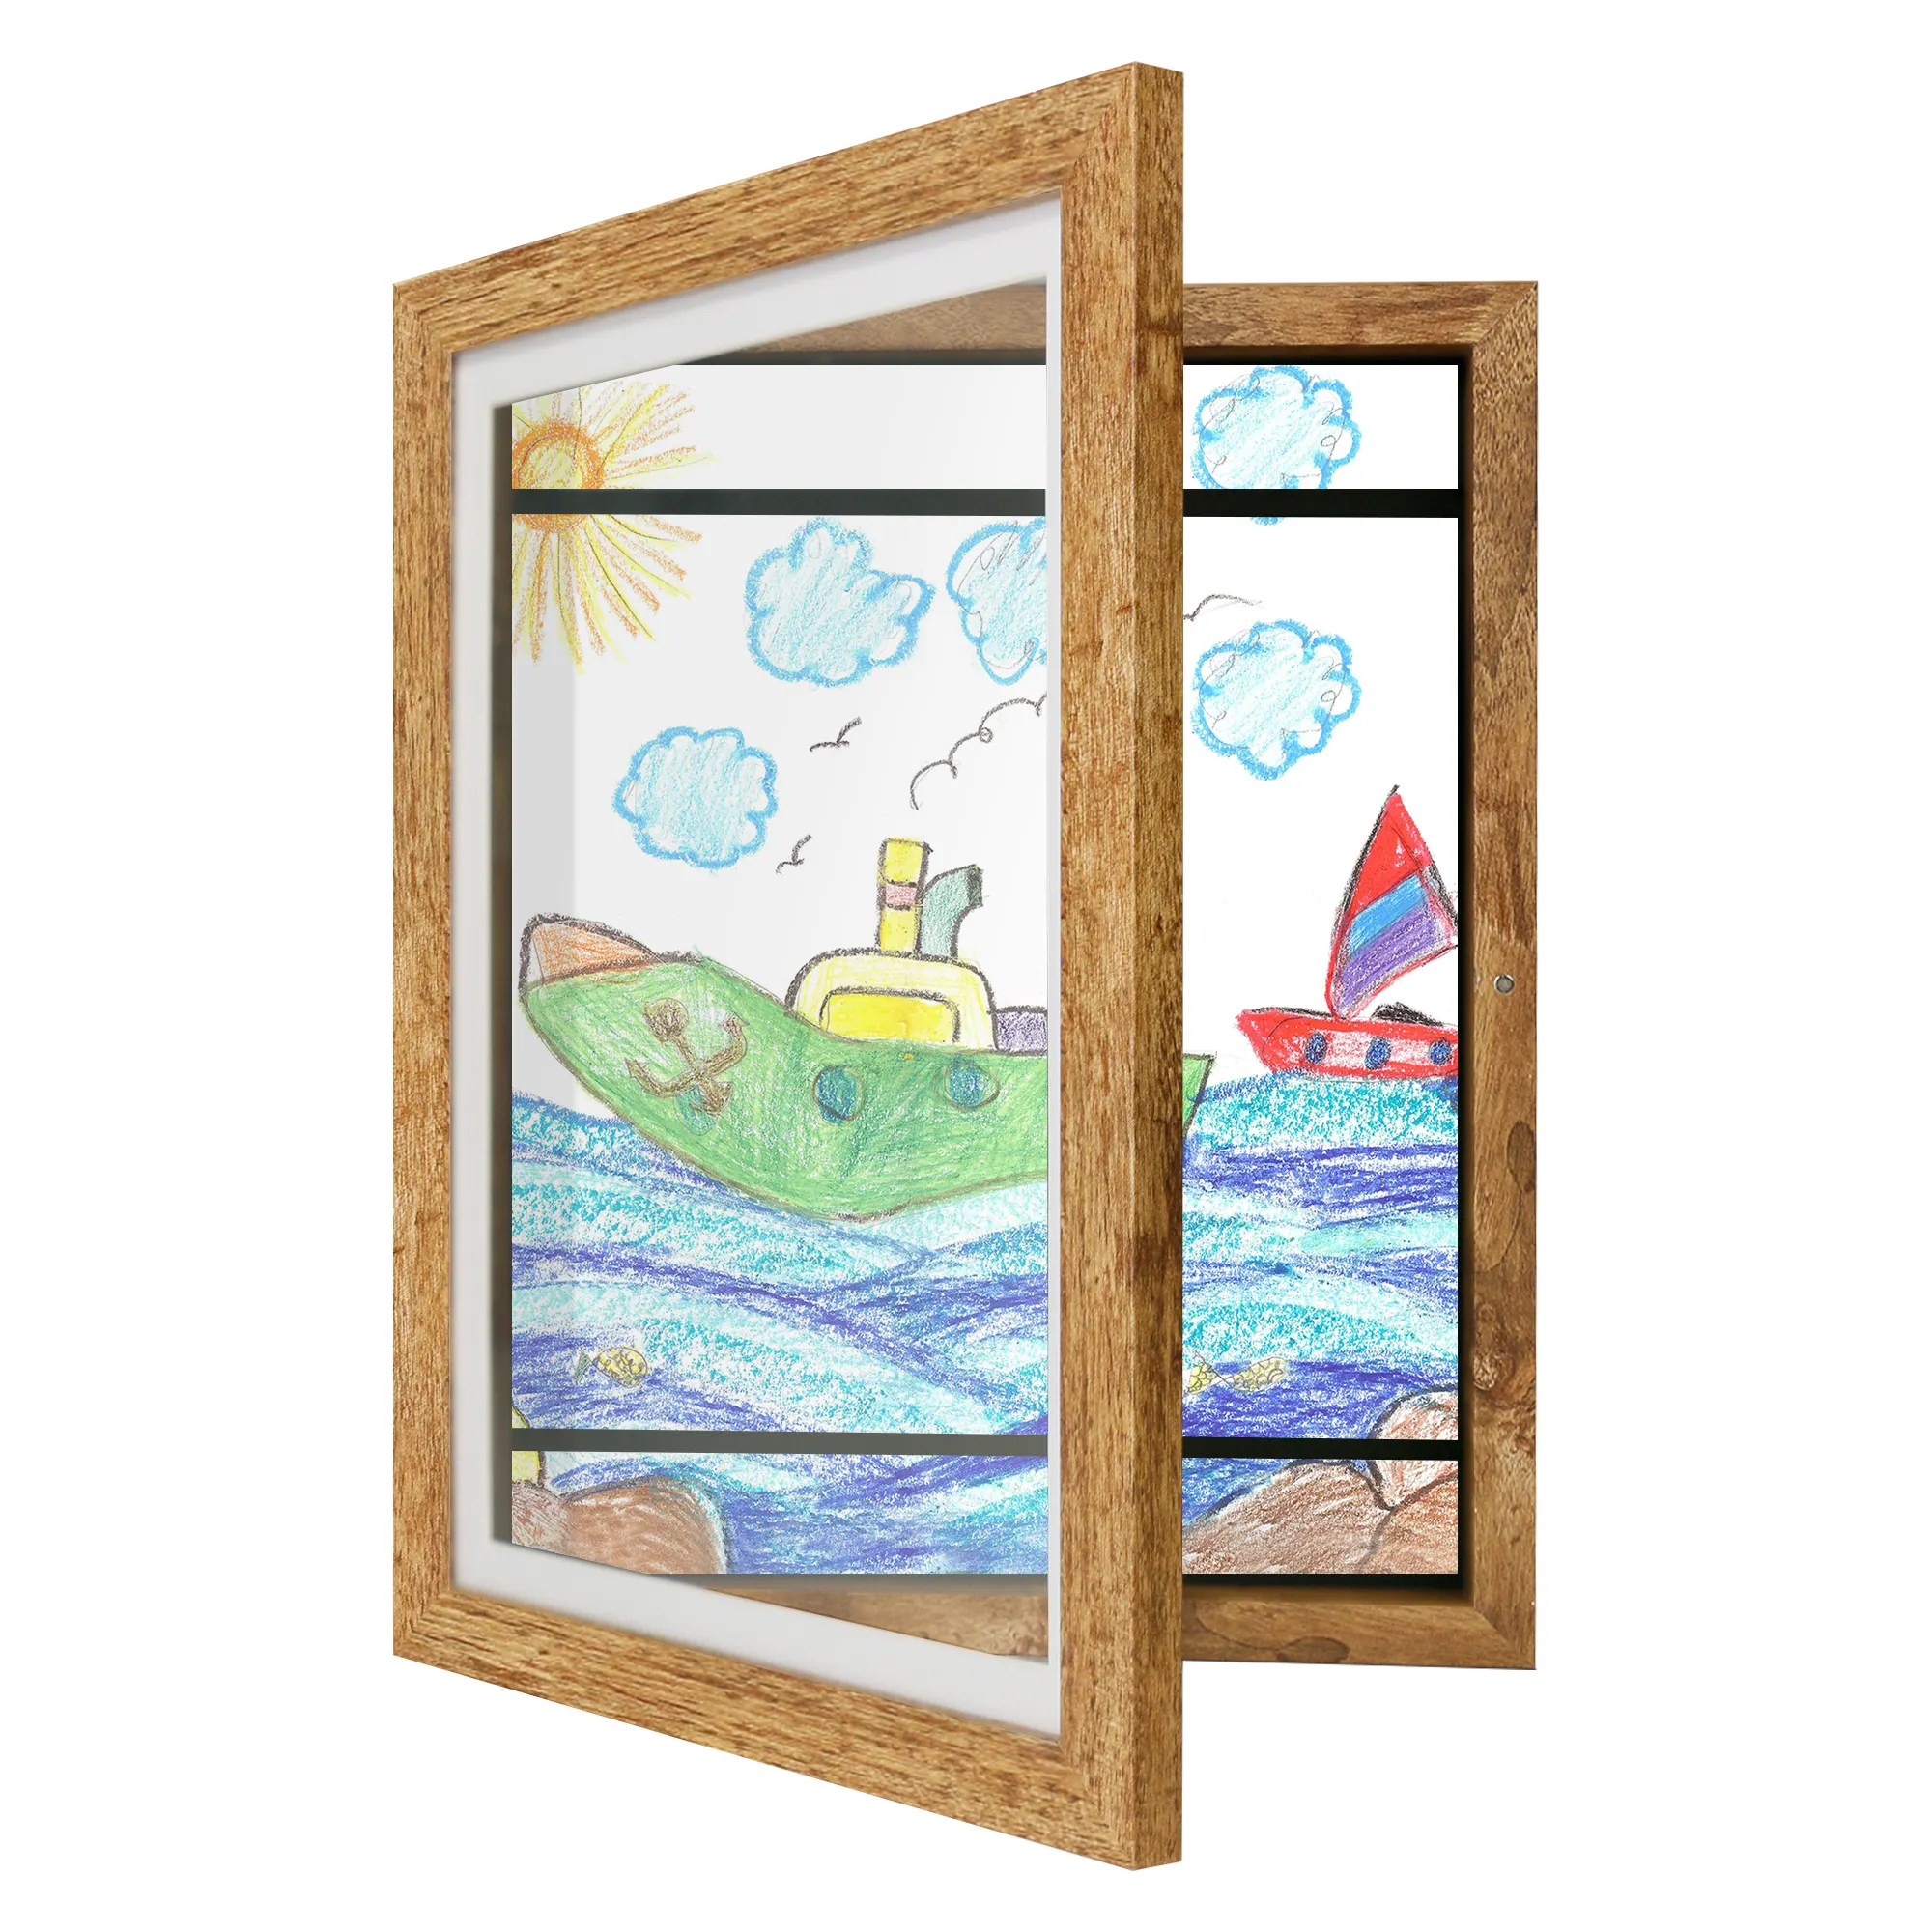 ילדי יצירות אמנות תמונה מסגרת לשינוי ב שחור עץ ורוד כחול עם לנפץ עמיד זכוכית לילדים יצירות אמנות מסגרת